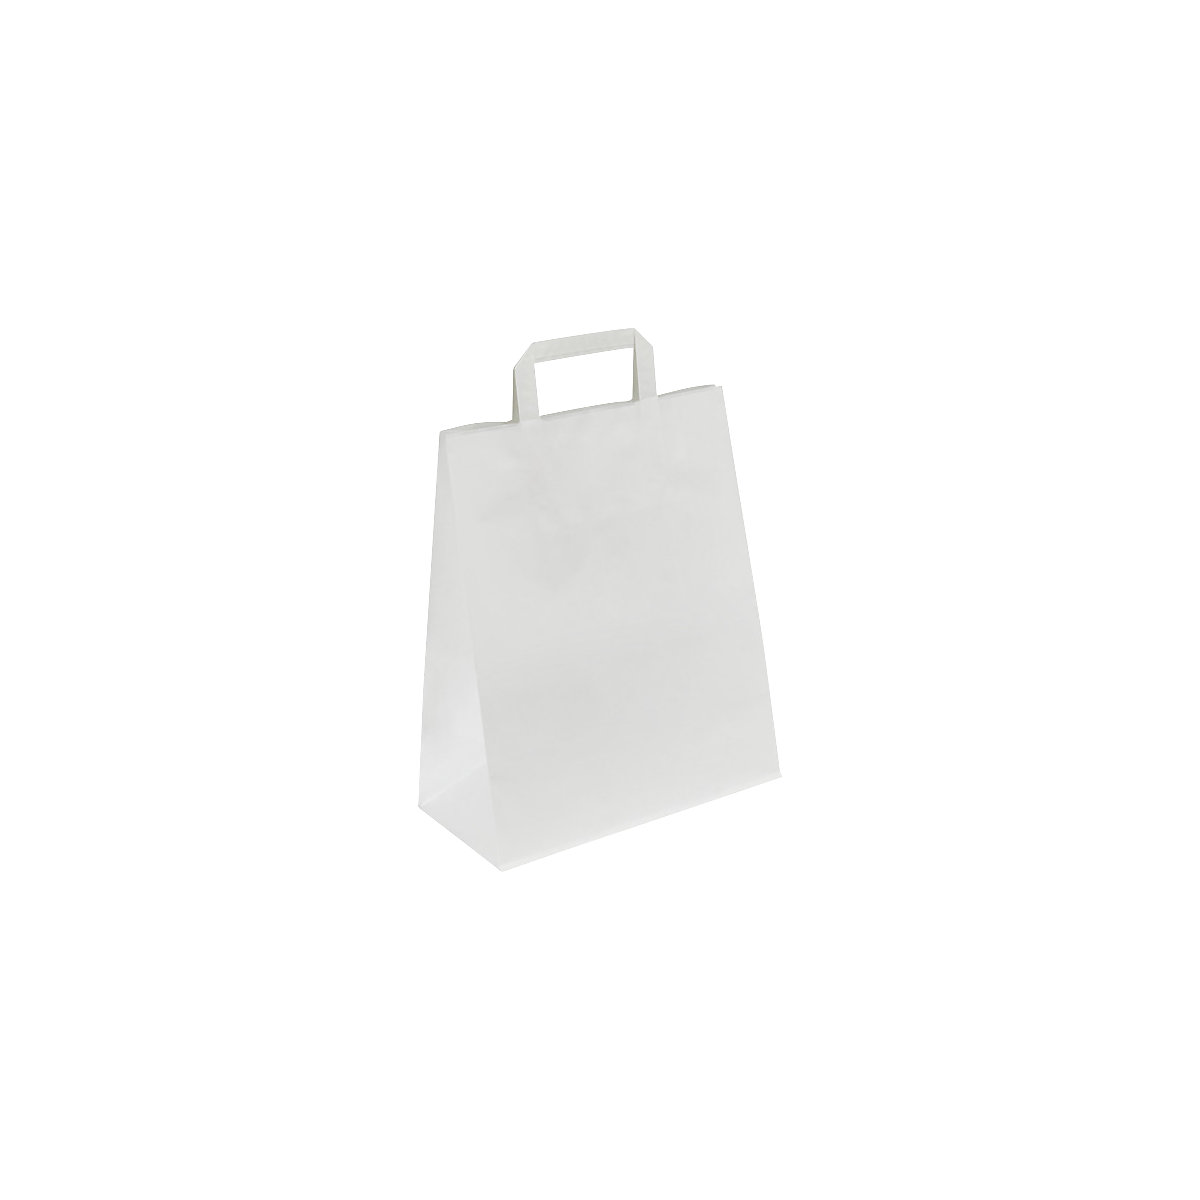 Sacchetto di carta, bianco, lungh. x largh. x alt. 400 x 160 x 450 mm, 100 g/m², conf. da 200 pz.-2